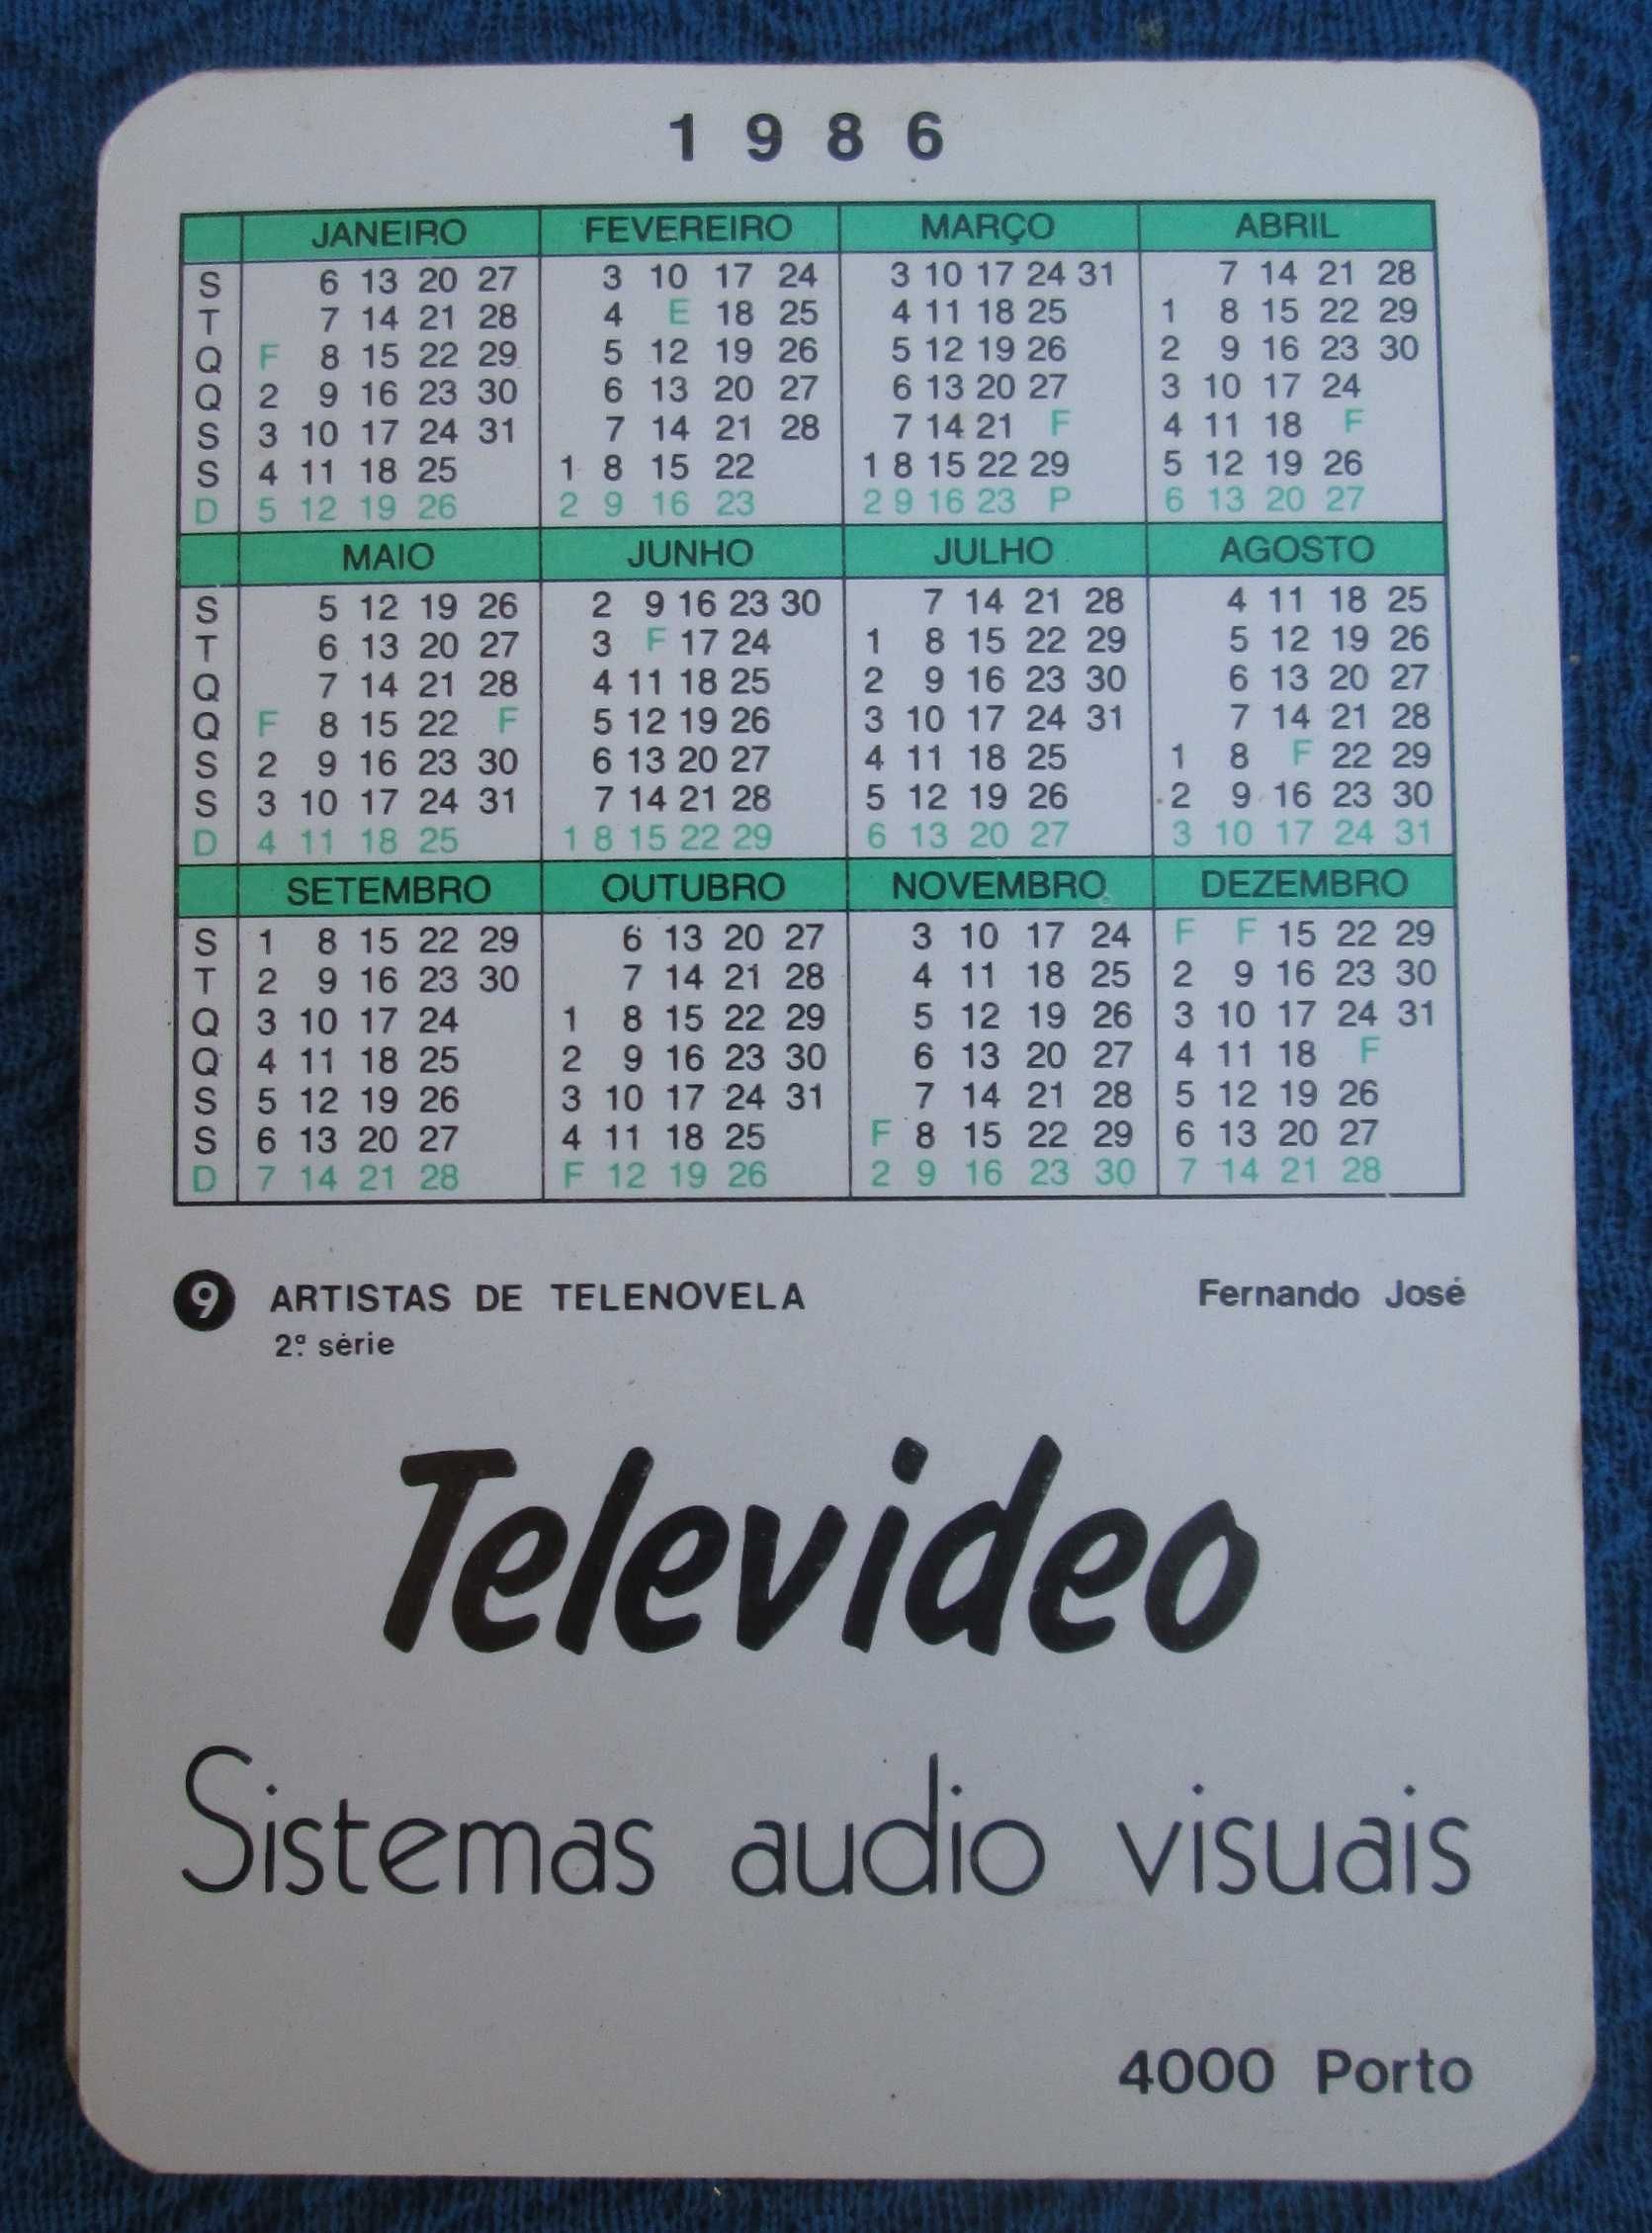 Calendários diversos Artistas telenovela brasil 1986 (Ler descrição)